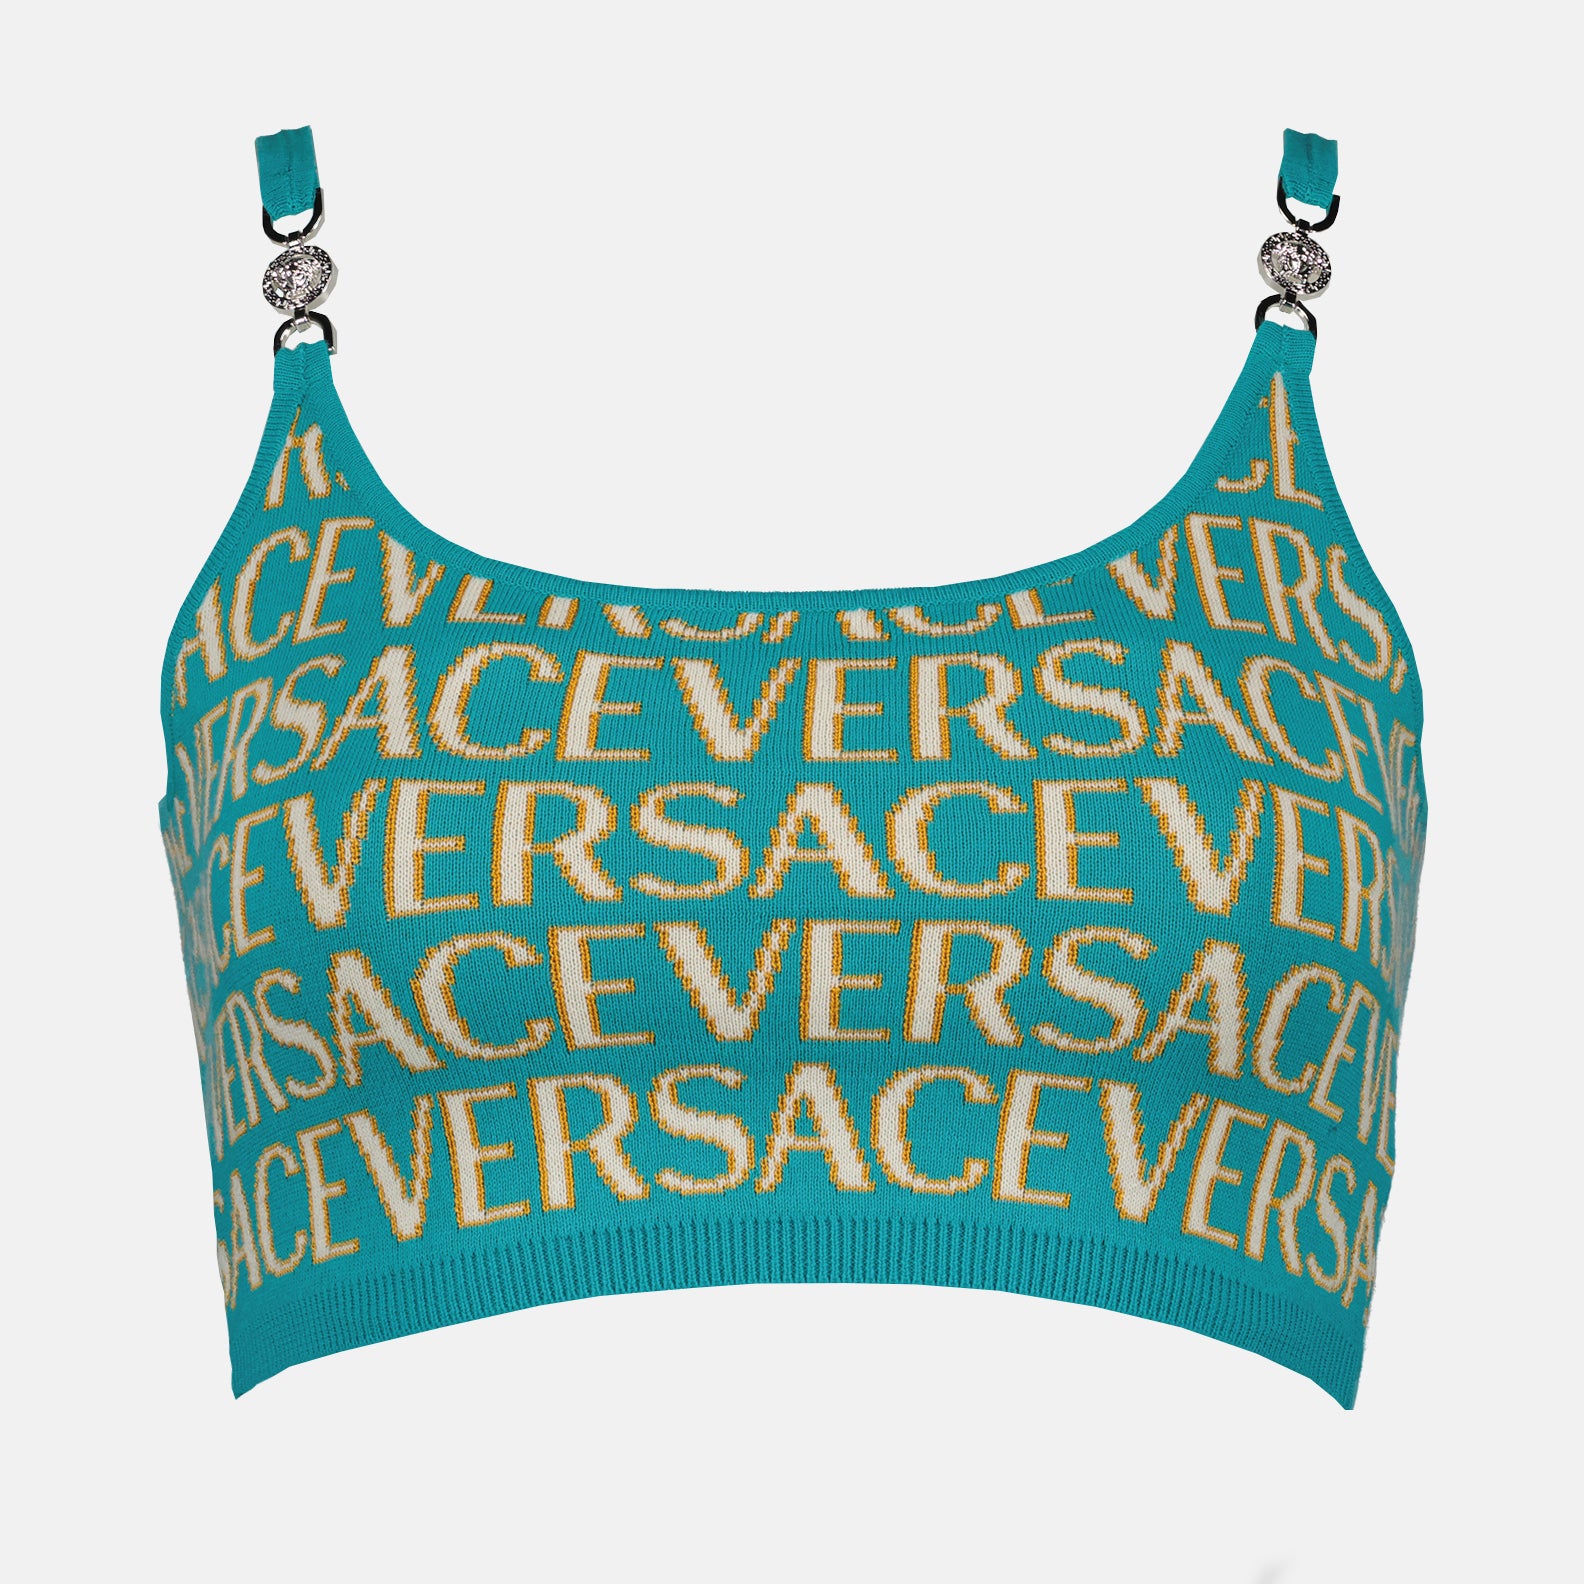 Versace Allover mesh crop top